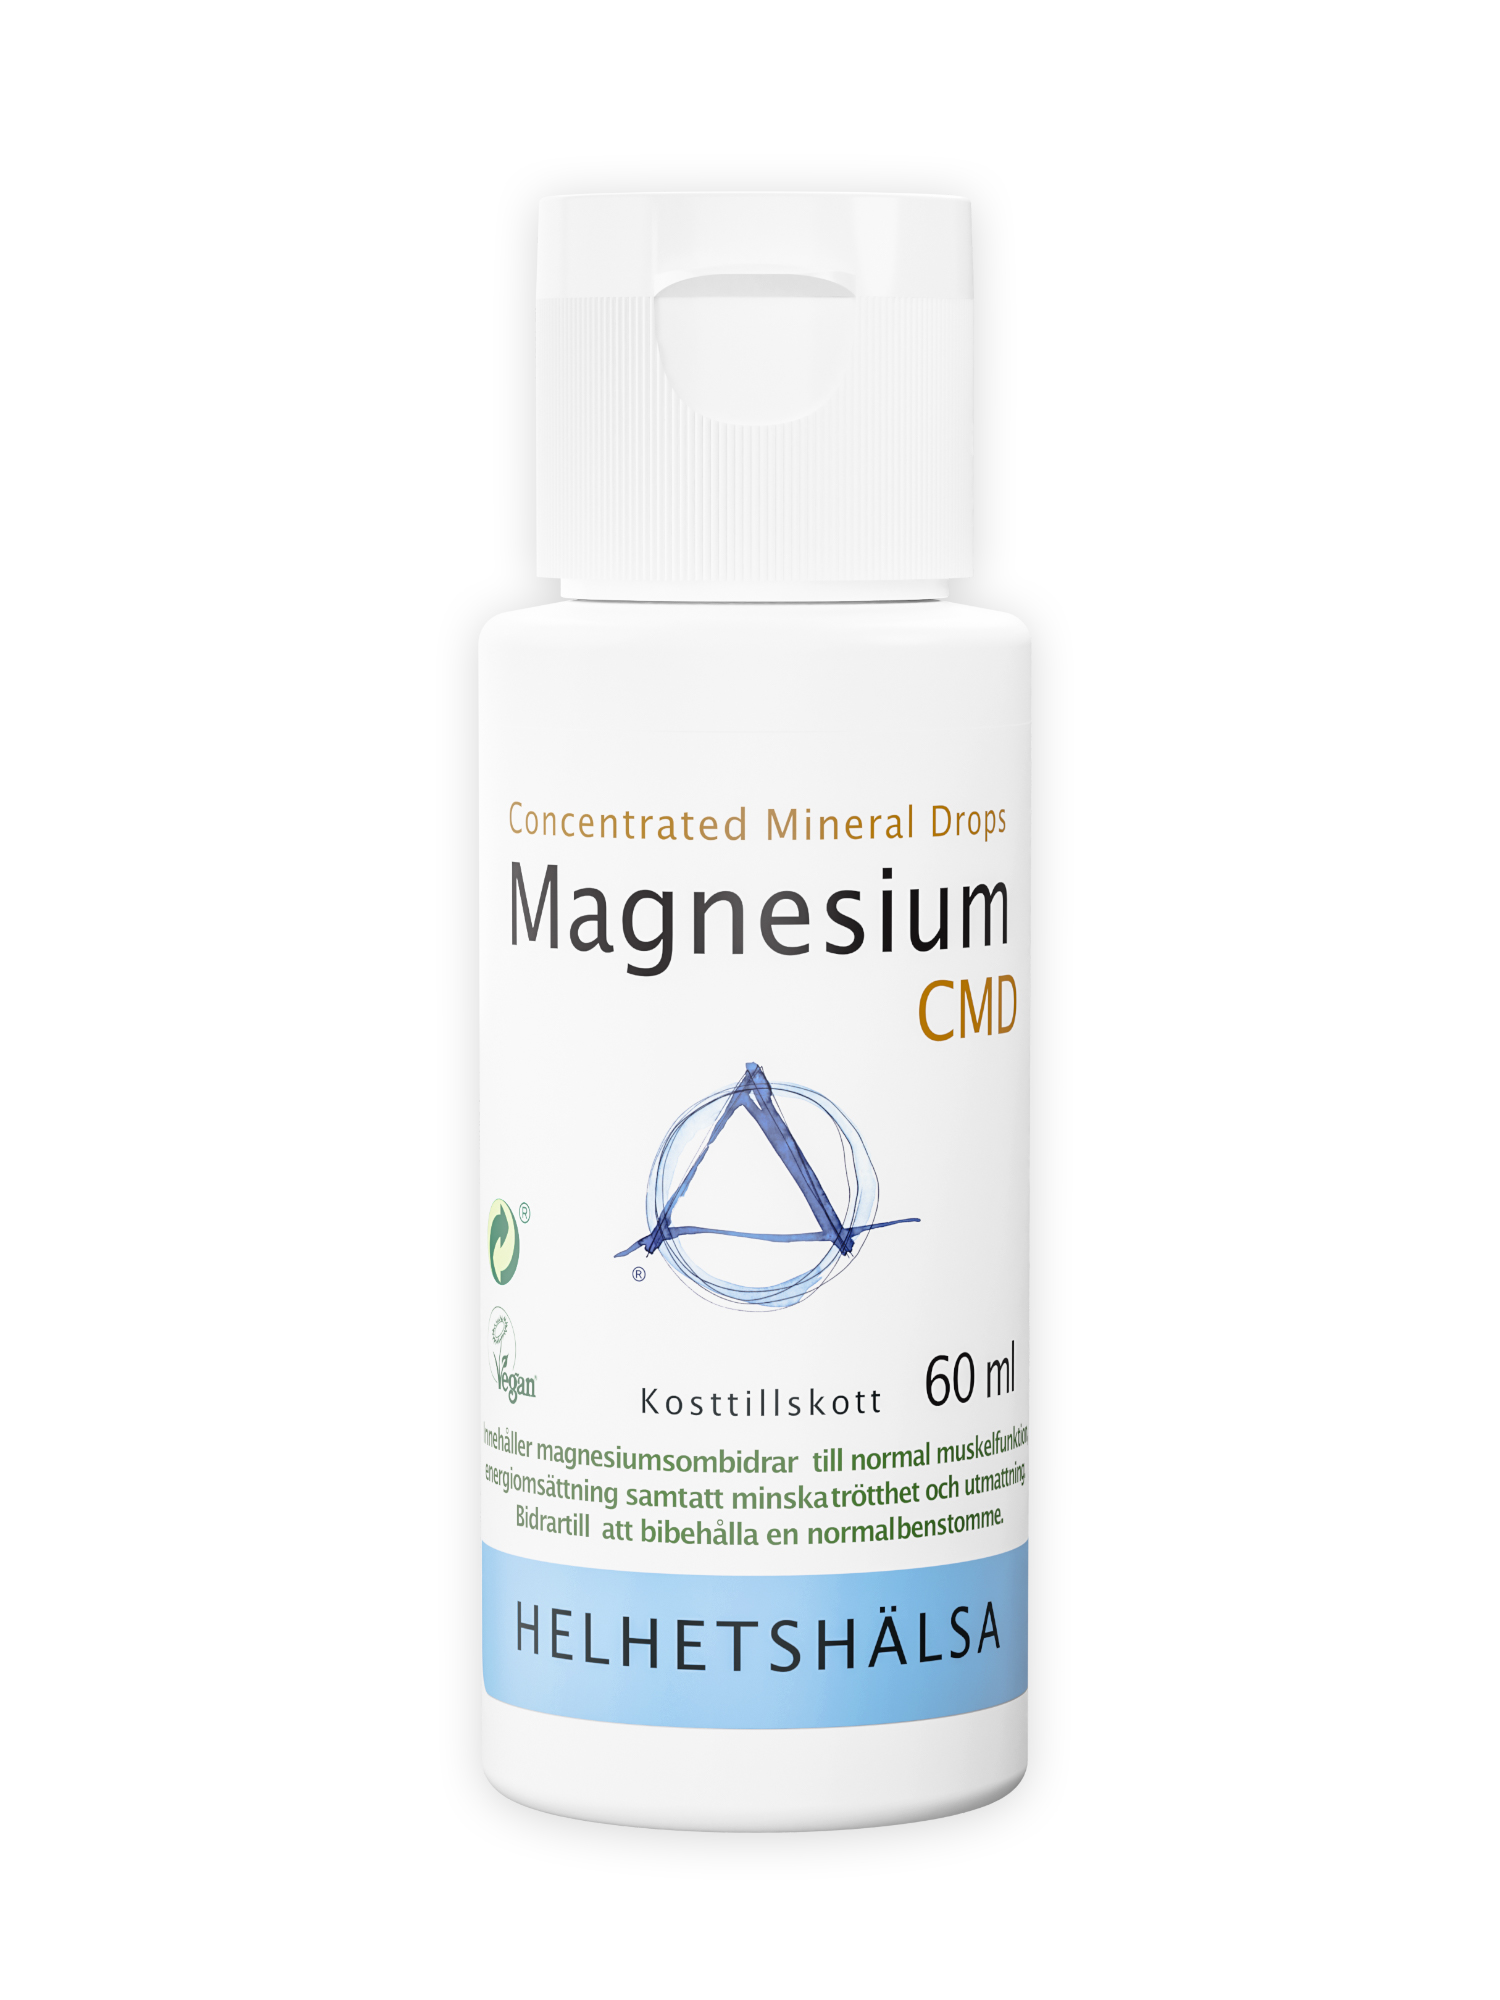 Magnesiumdroppar från Helhetshälsa